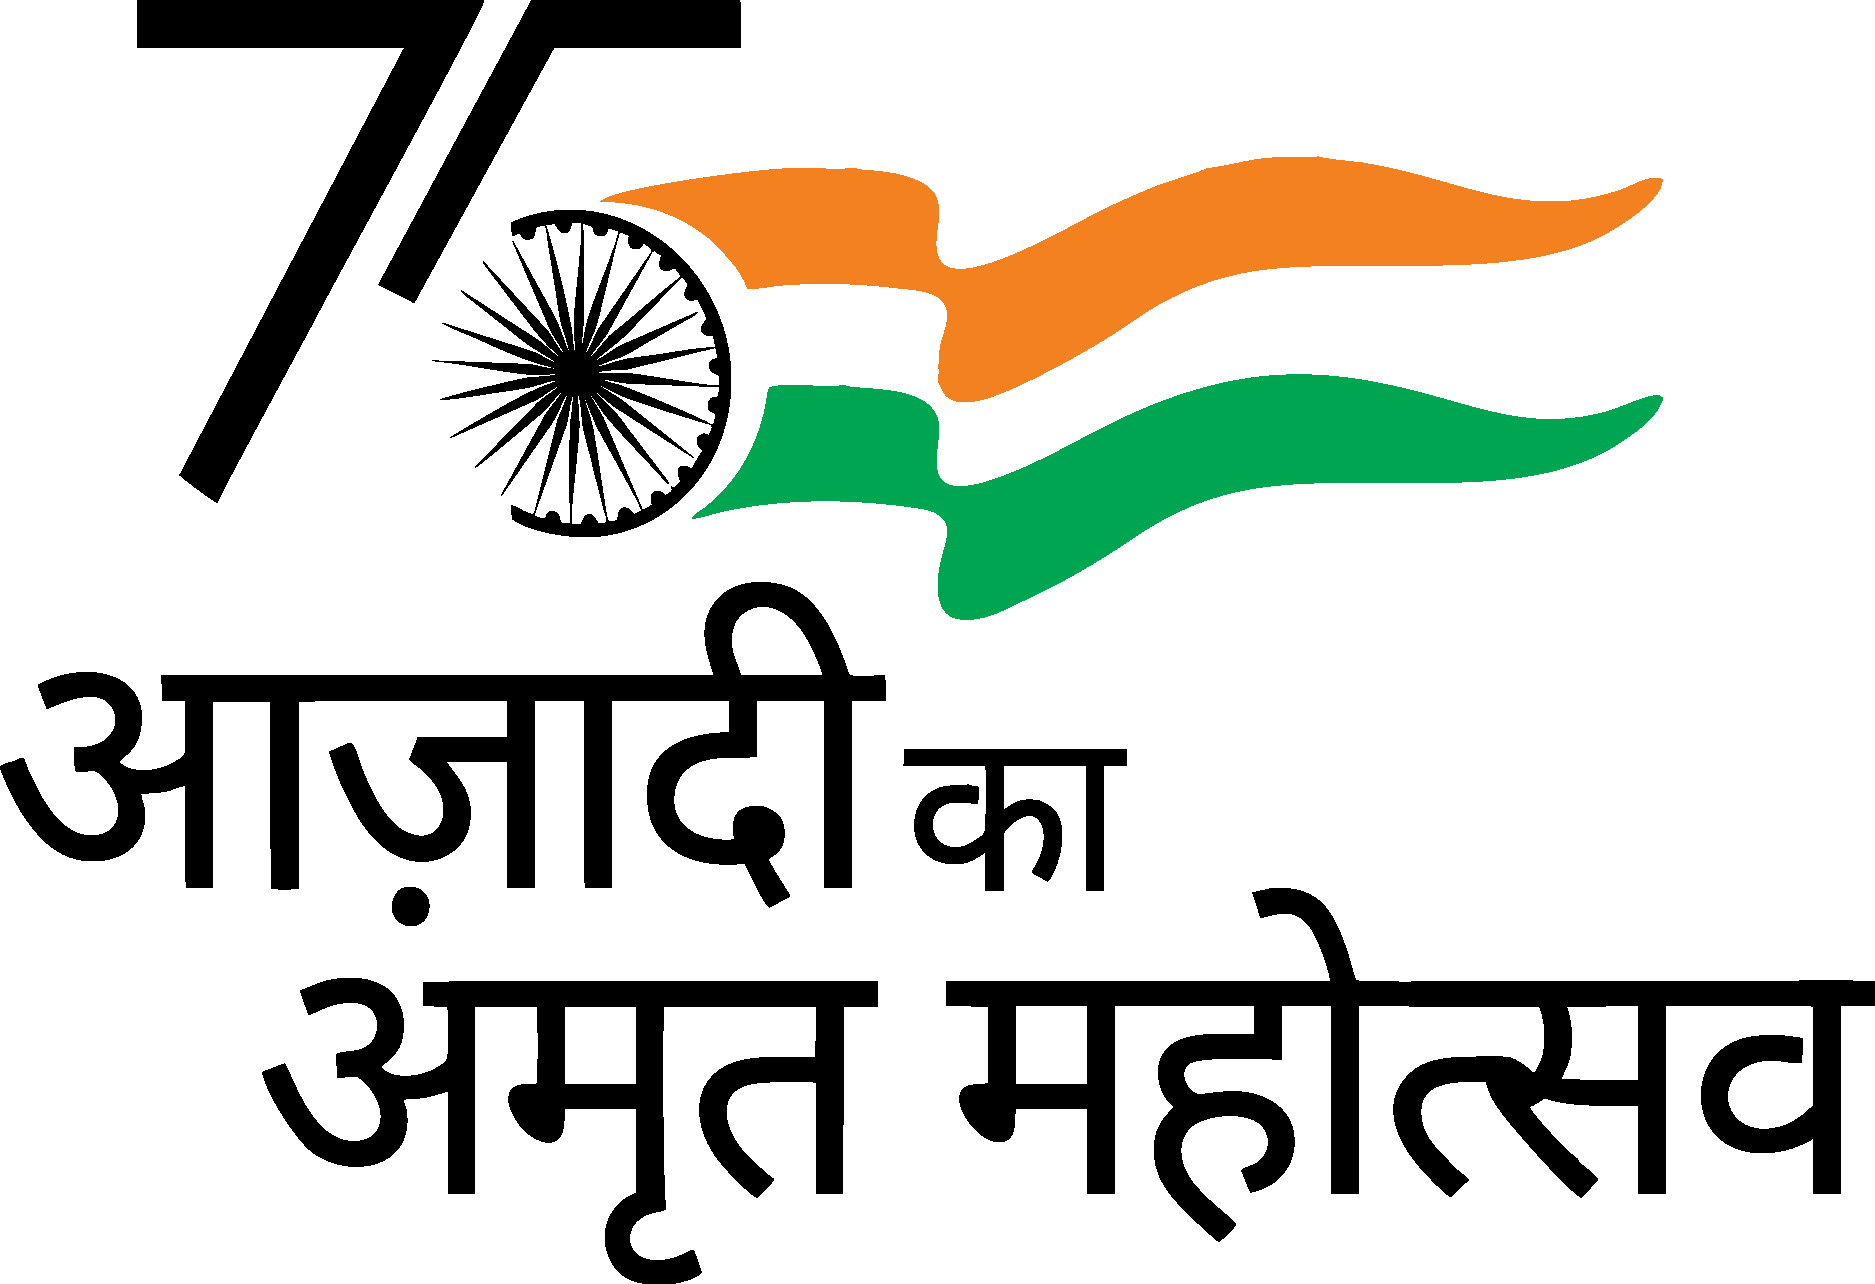 Amrutmhotsav Logo : सर्व शासकीय पत्रव्यवहारांवर आता 'स्वातंत्र्याचा अमृत  महोत्सव' लोगो, राज्य सरकारचा निर्णय Amrutmhotsav Logo: 'Amrut Mahotsav' logo  on all government ...